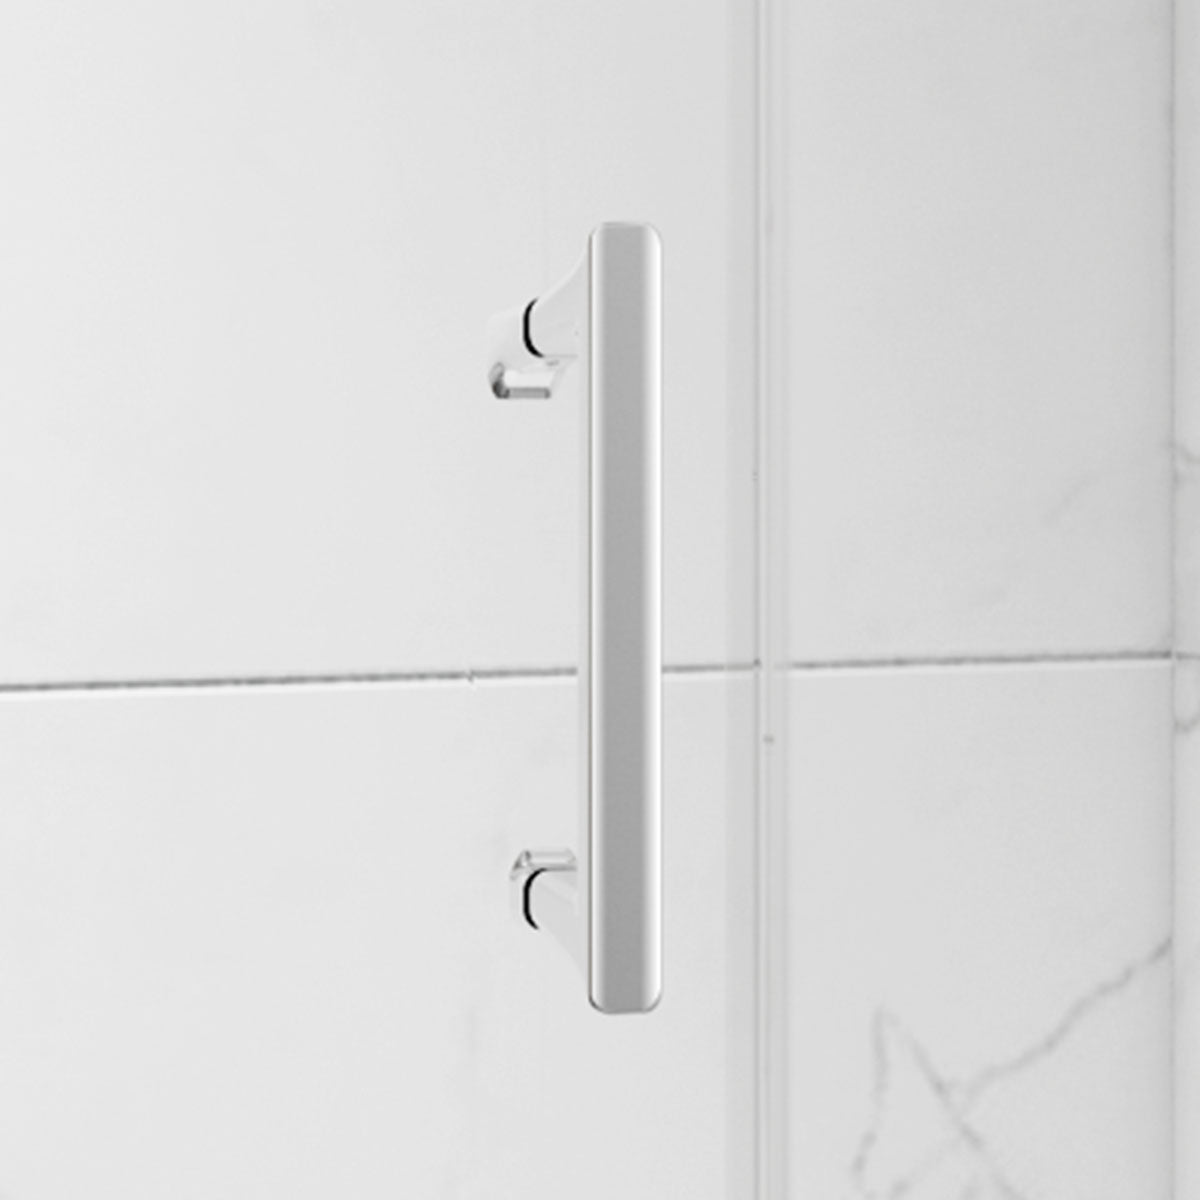 Merlyn 6 Series Sleek Quadrant Sliding Shower Door Chrome